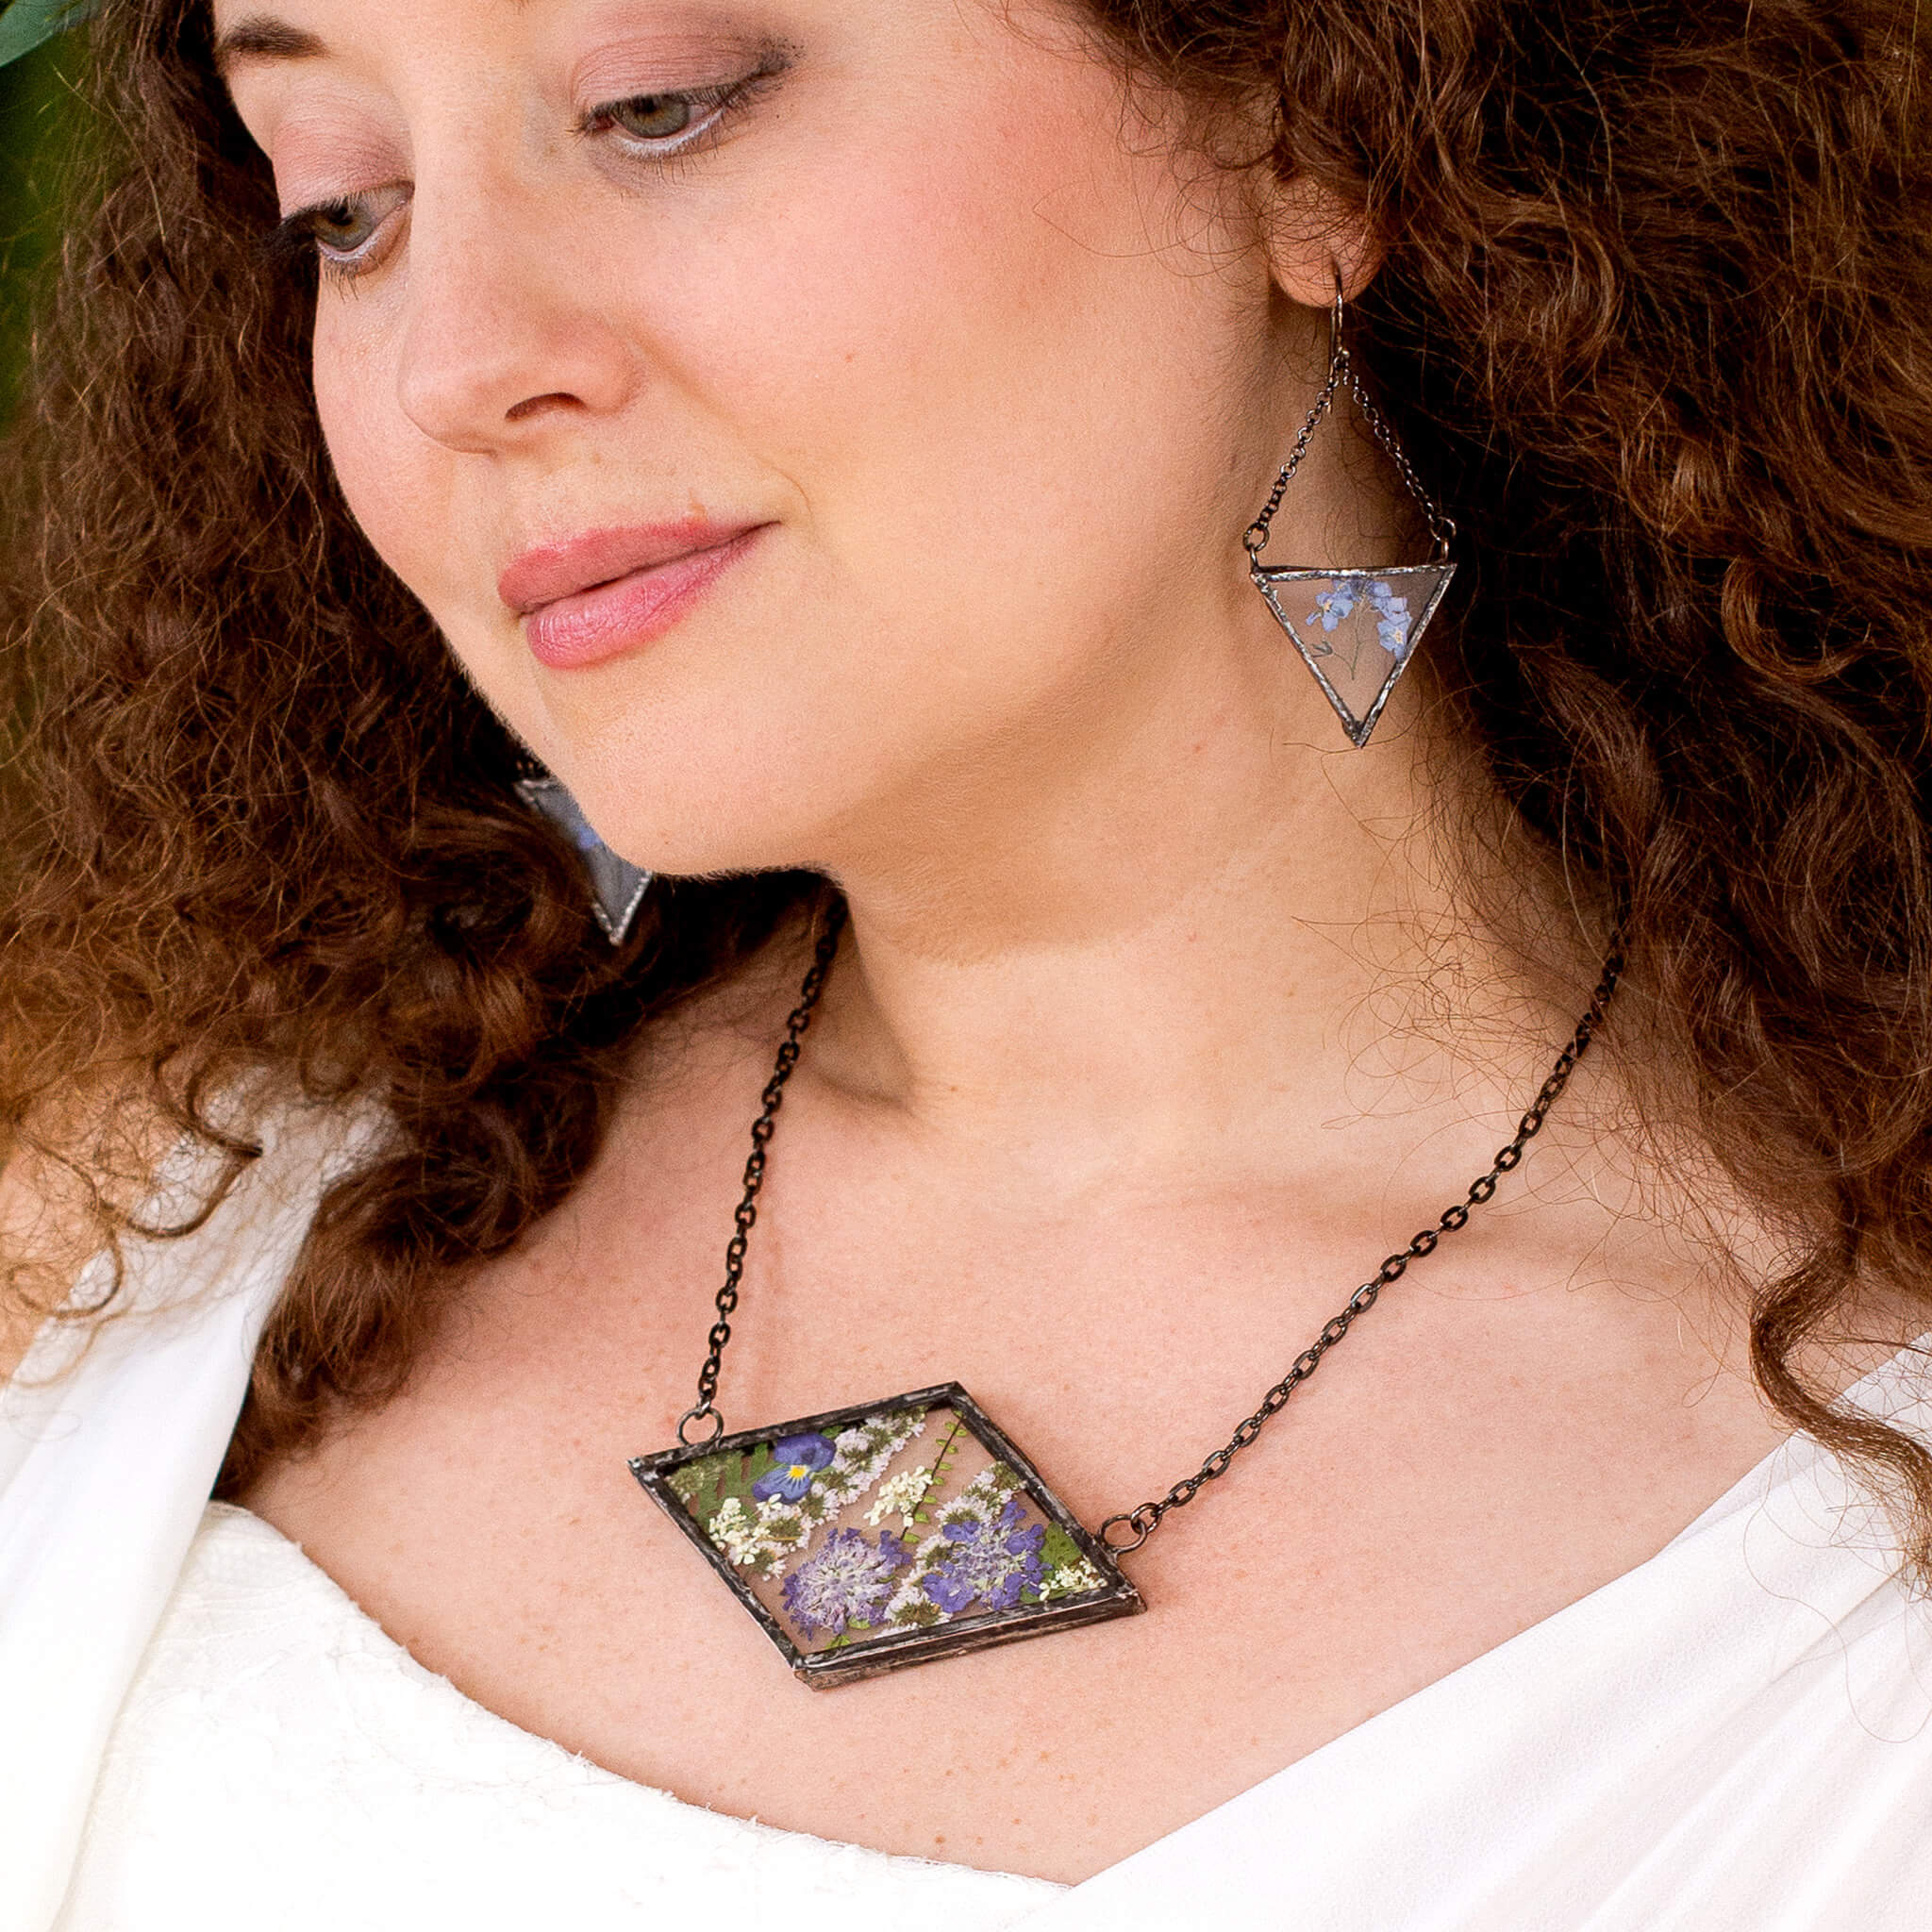 Brunette wearing rhomboidal Purple pressed flower necklace